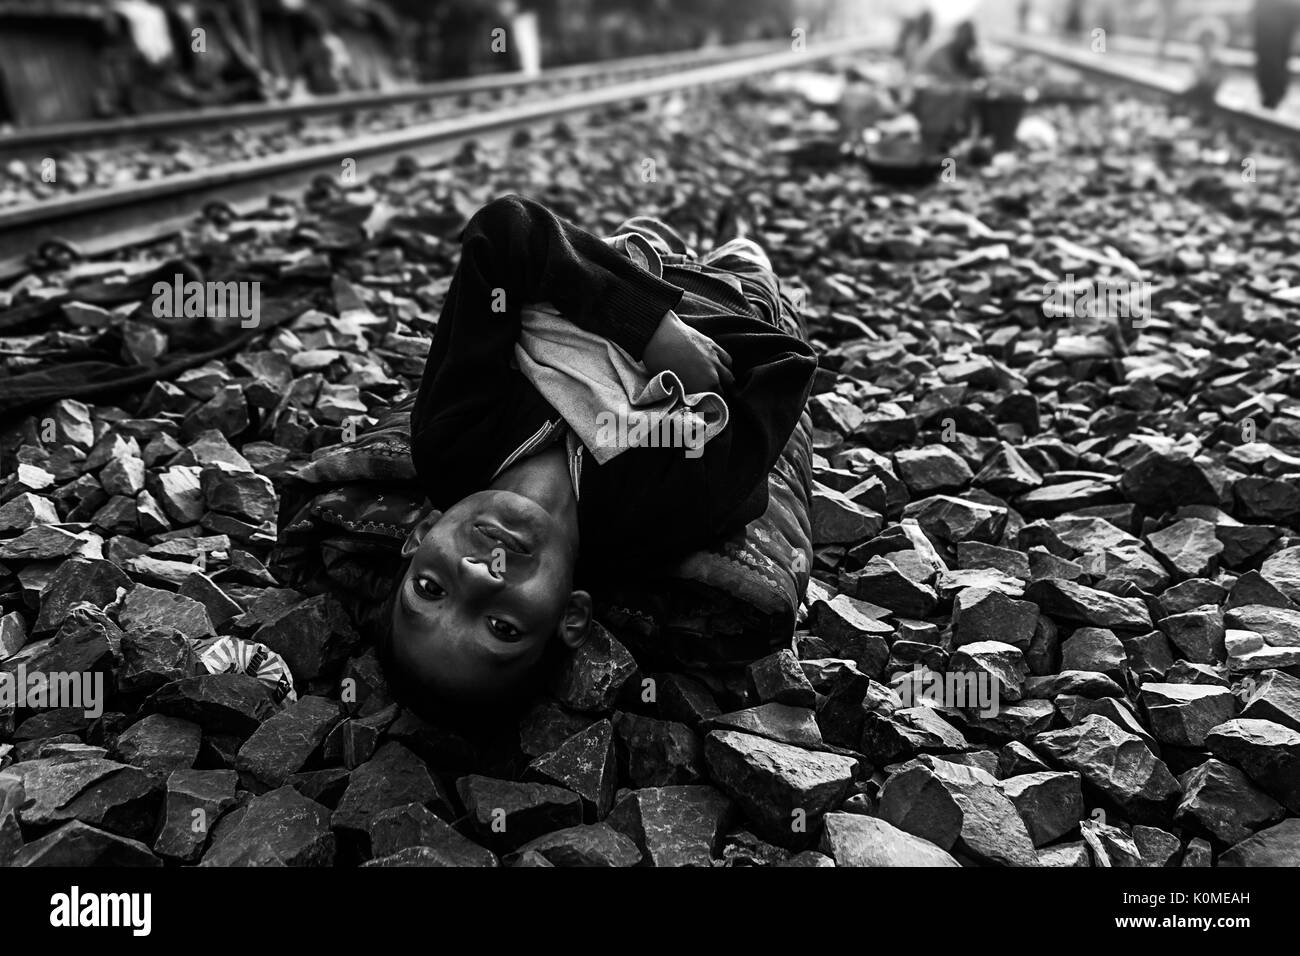 Le garçon endormi sur la voie ferrée, Kolkata, Bengale occidental, Inde, Asie Banque D'Images